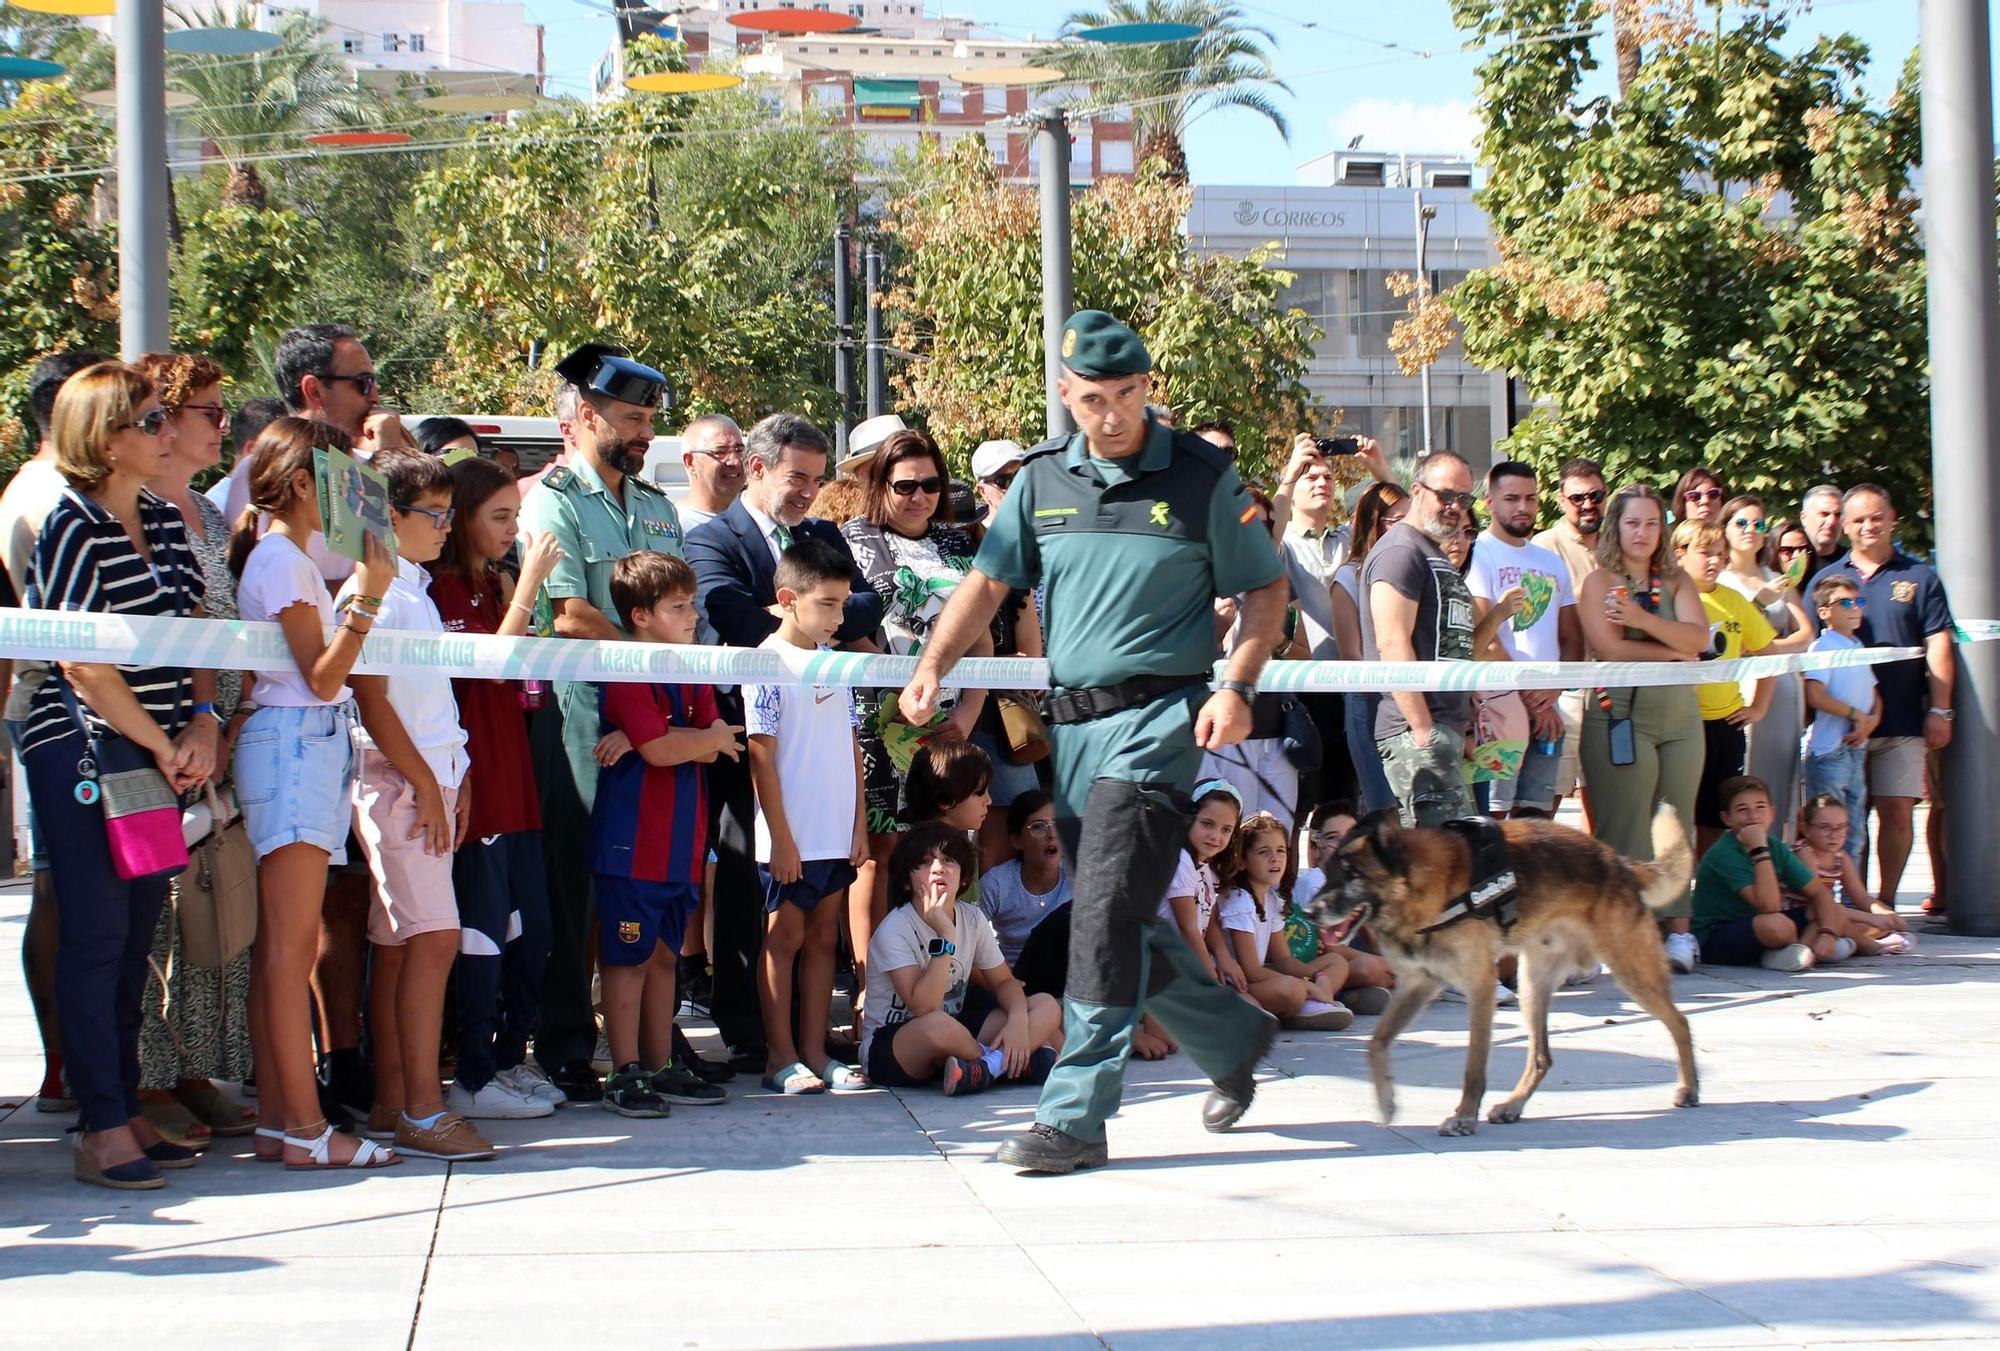 La Guardia Civil expone sus recursos humanos y técnicos por la festividad de su Patrona